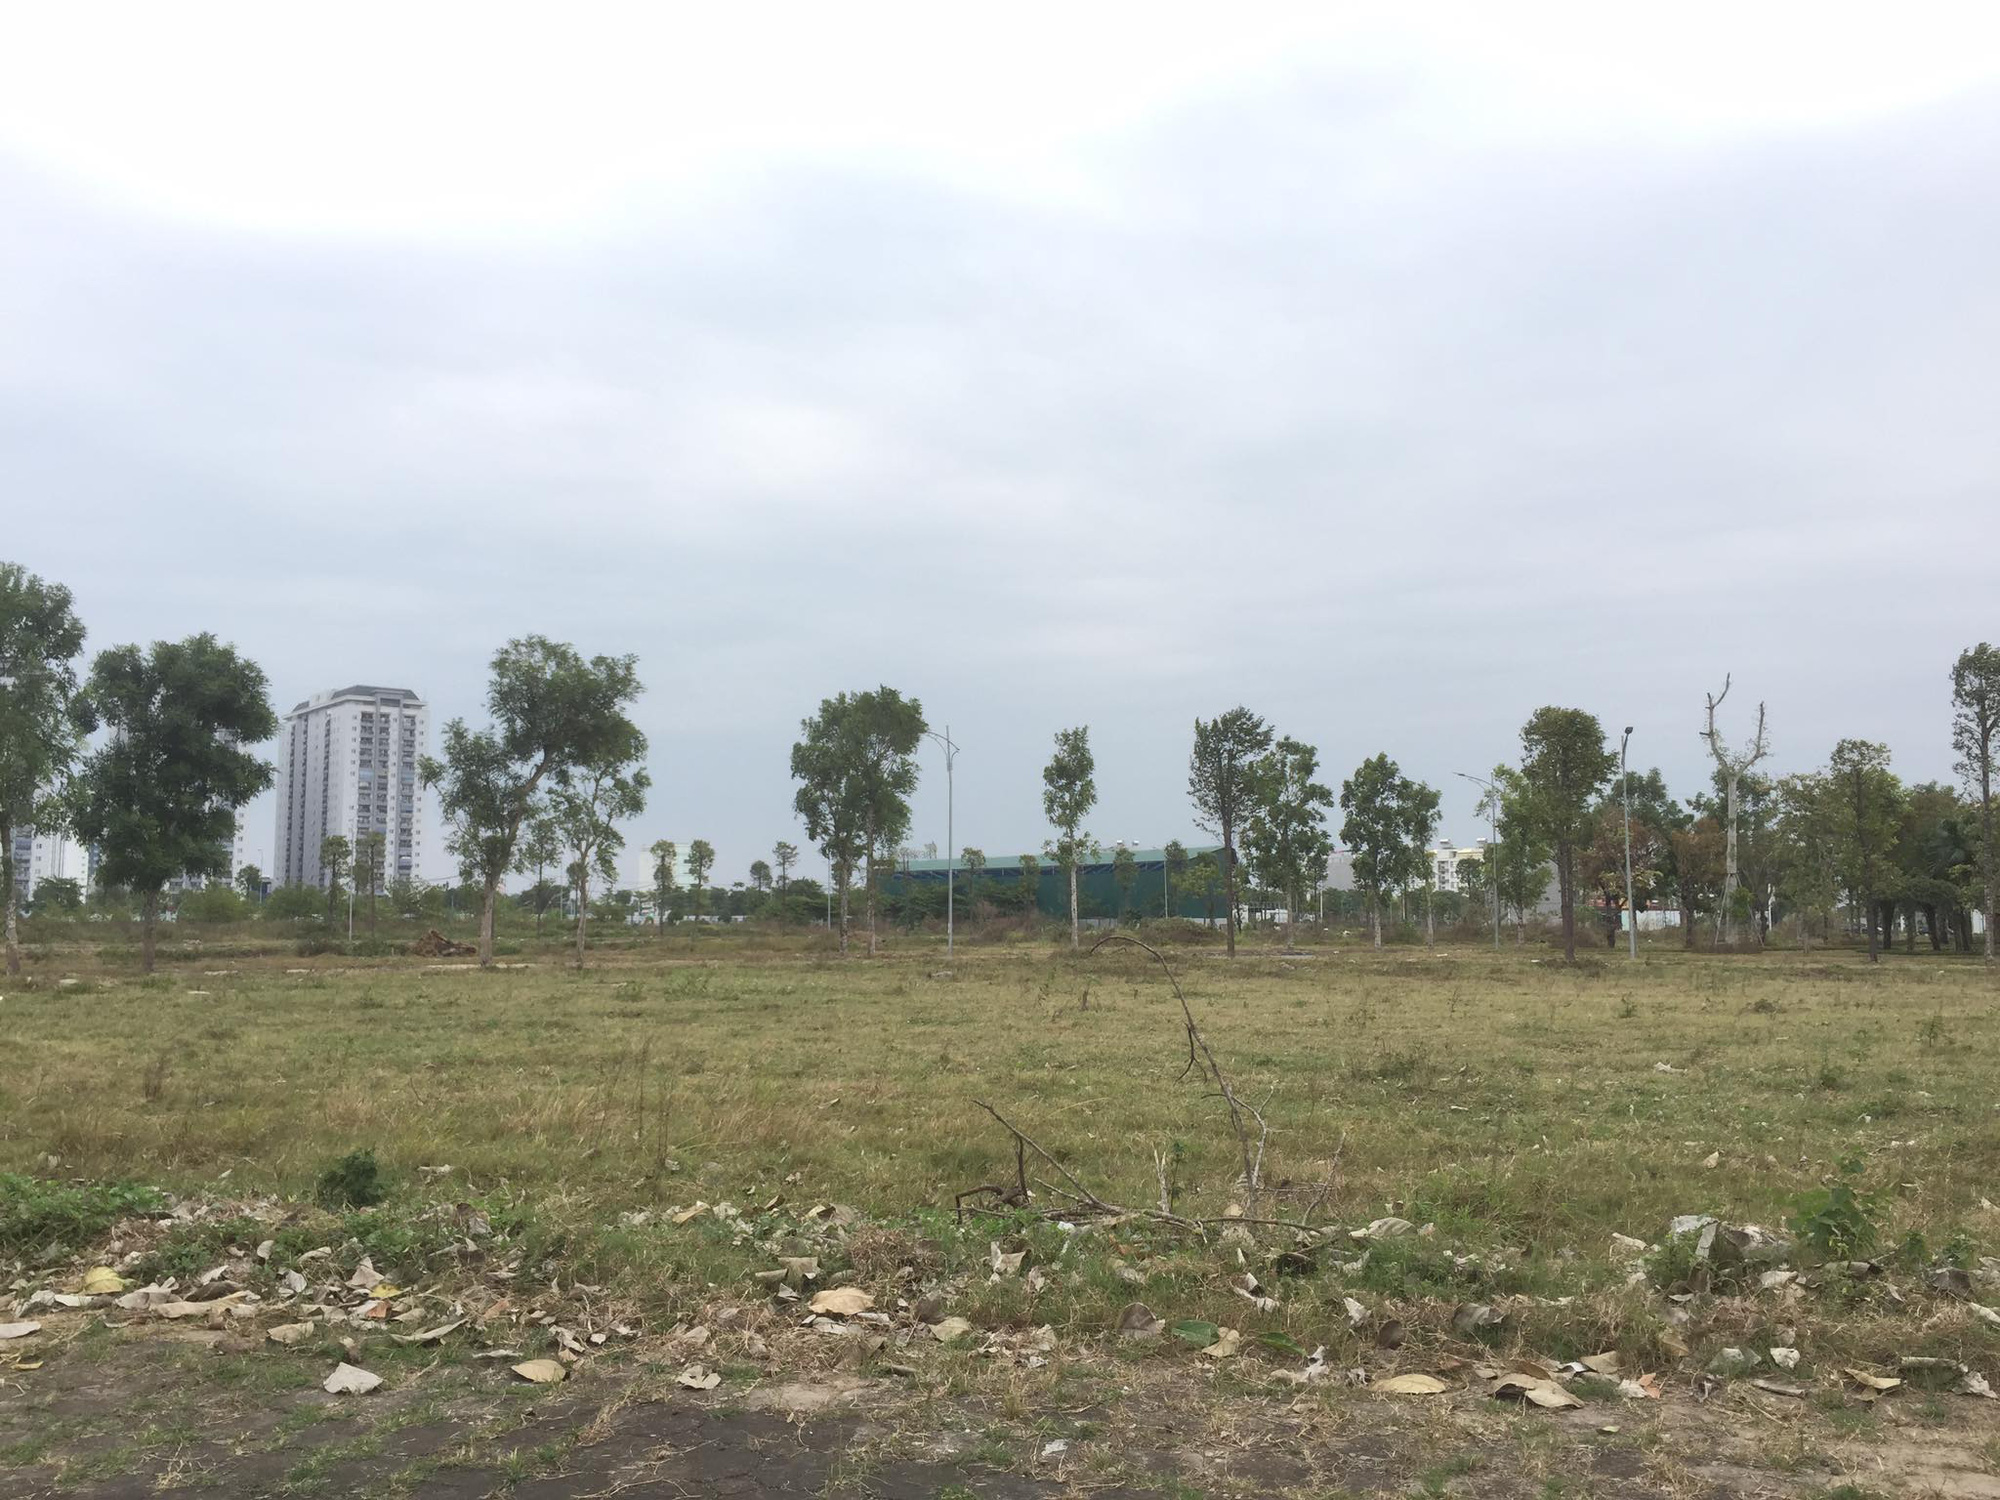 Dân kêu trời vì bỏ tiền tỷ mua đất ở Khu đô thị Thanh Hà nhưng chưa được xây nhà - Ảnh 2.